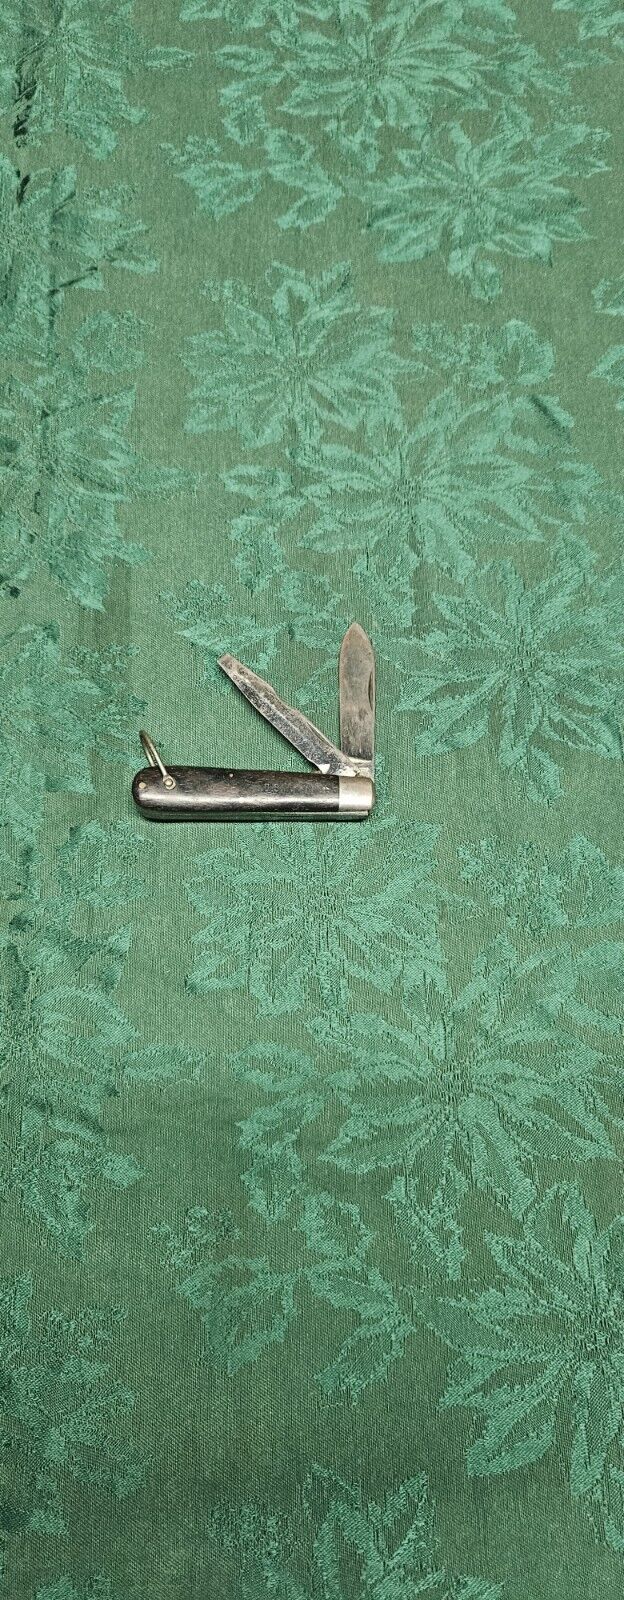 Vintage camillus usn pocket knife